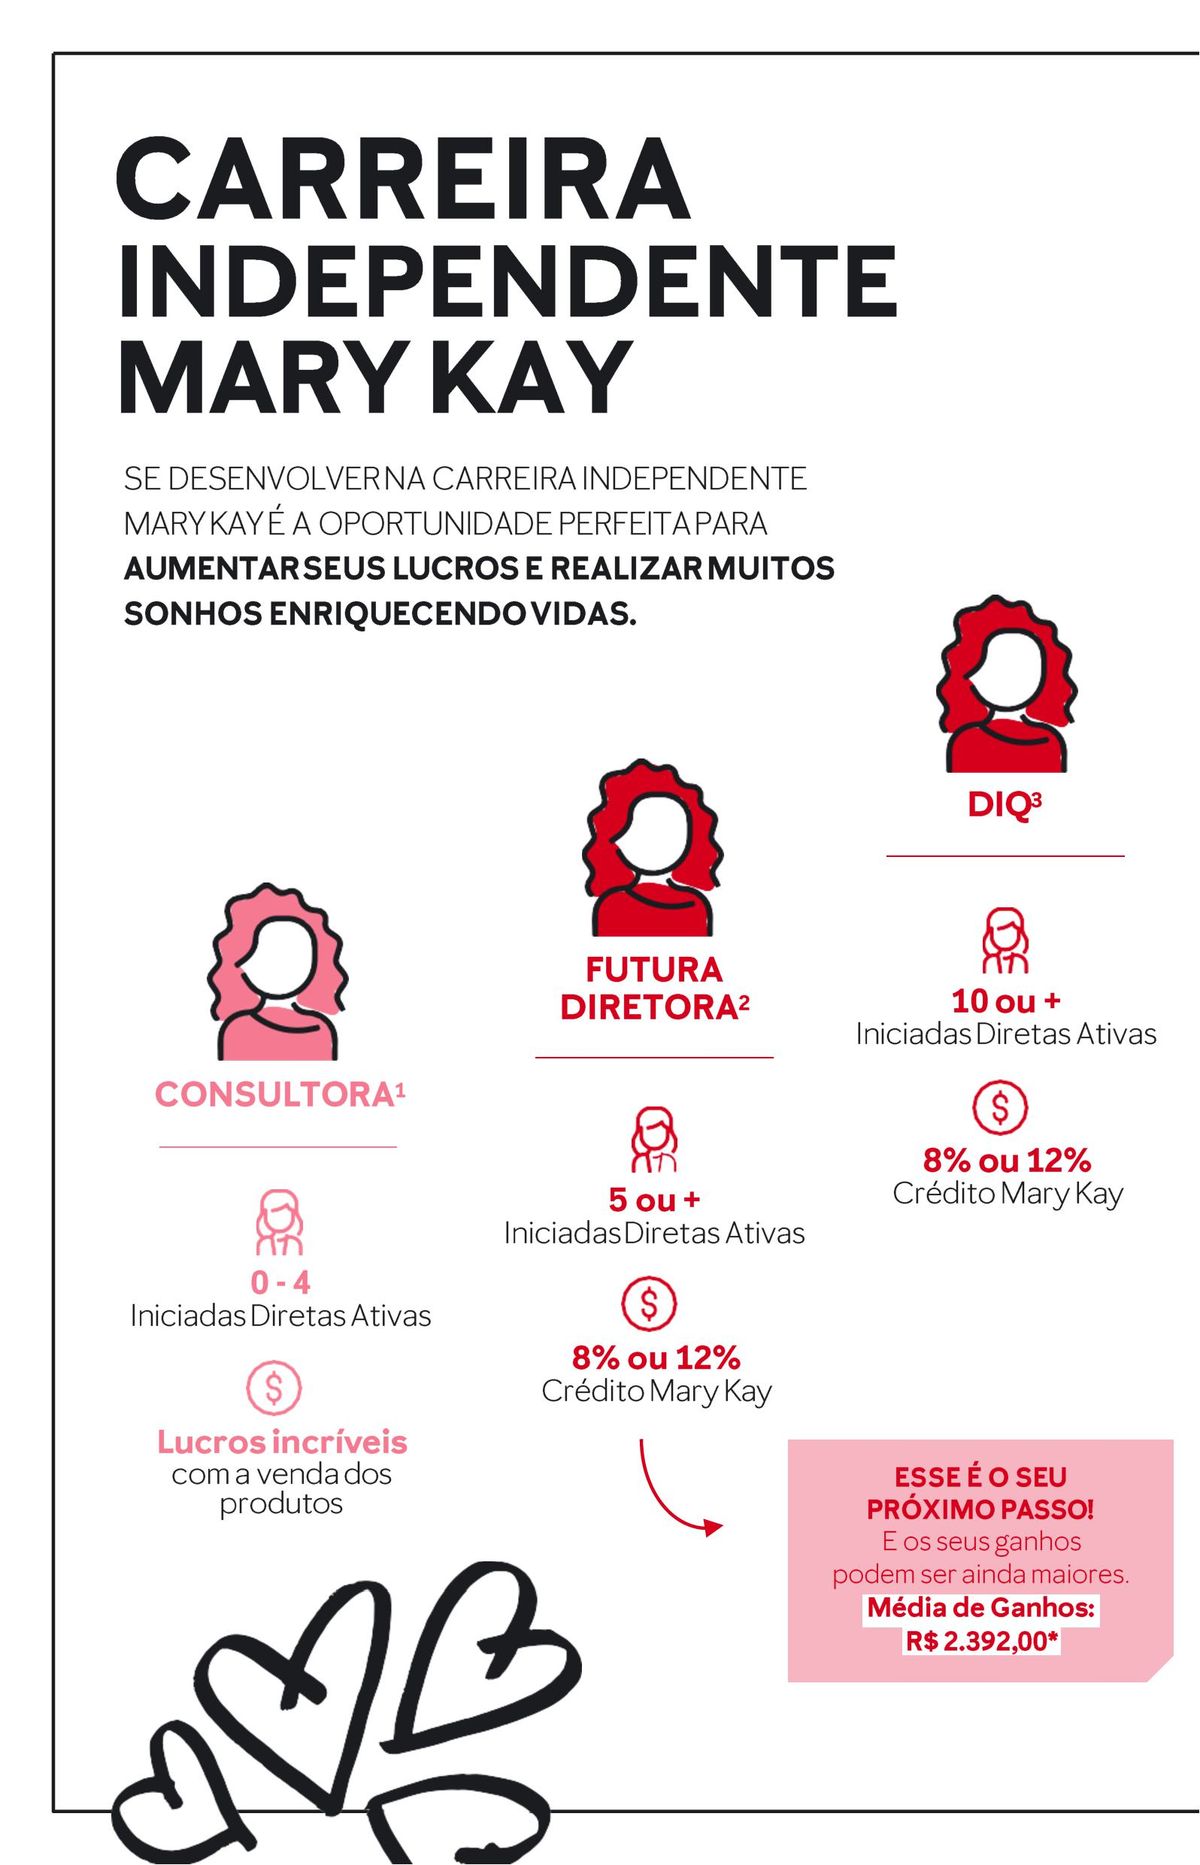 Aumente seus lucros e realize seus sonhos com a carreira independente Mary Kay